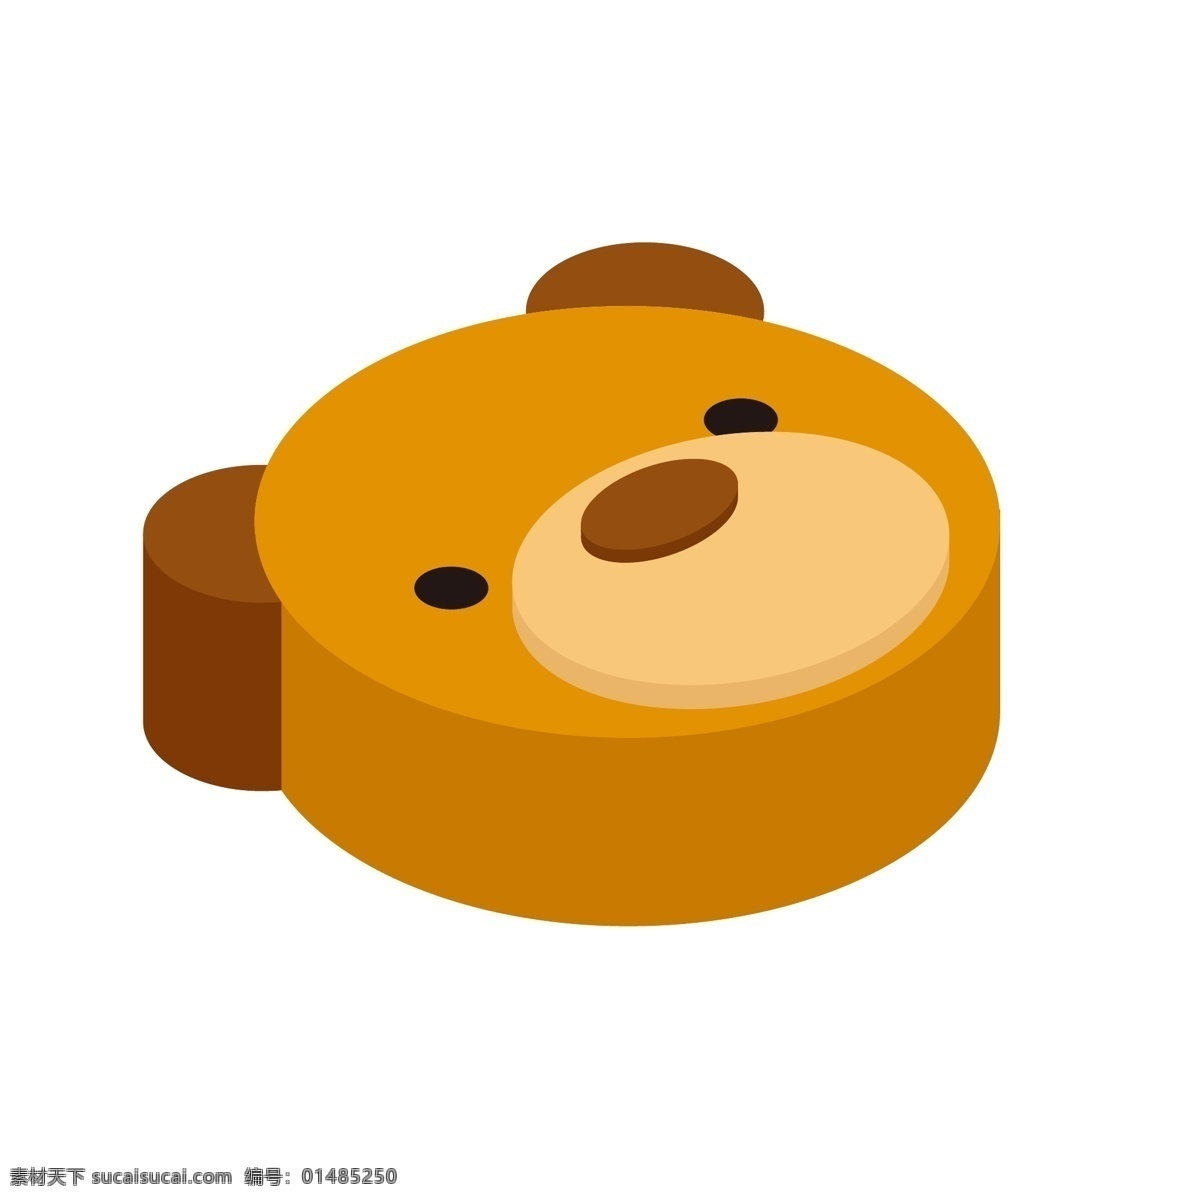 d 可爱 棕熊 头像 立体 图标 商用 元素 动物 熊 熊娃娃 等距 商标